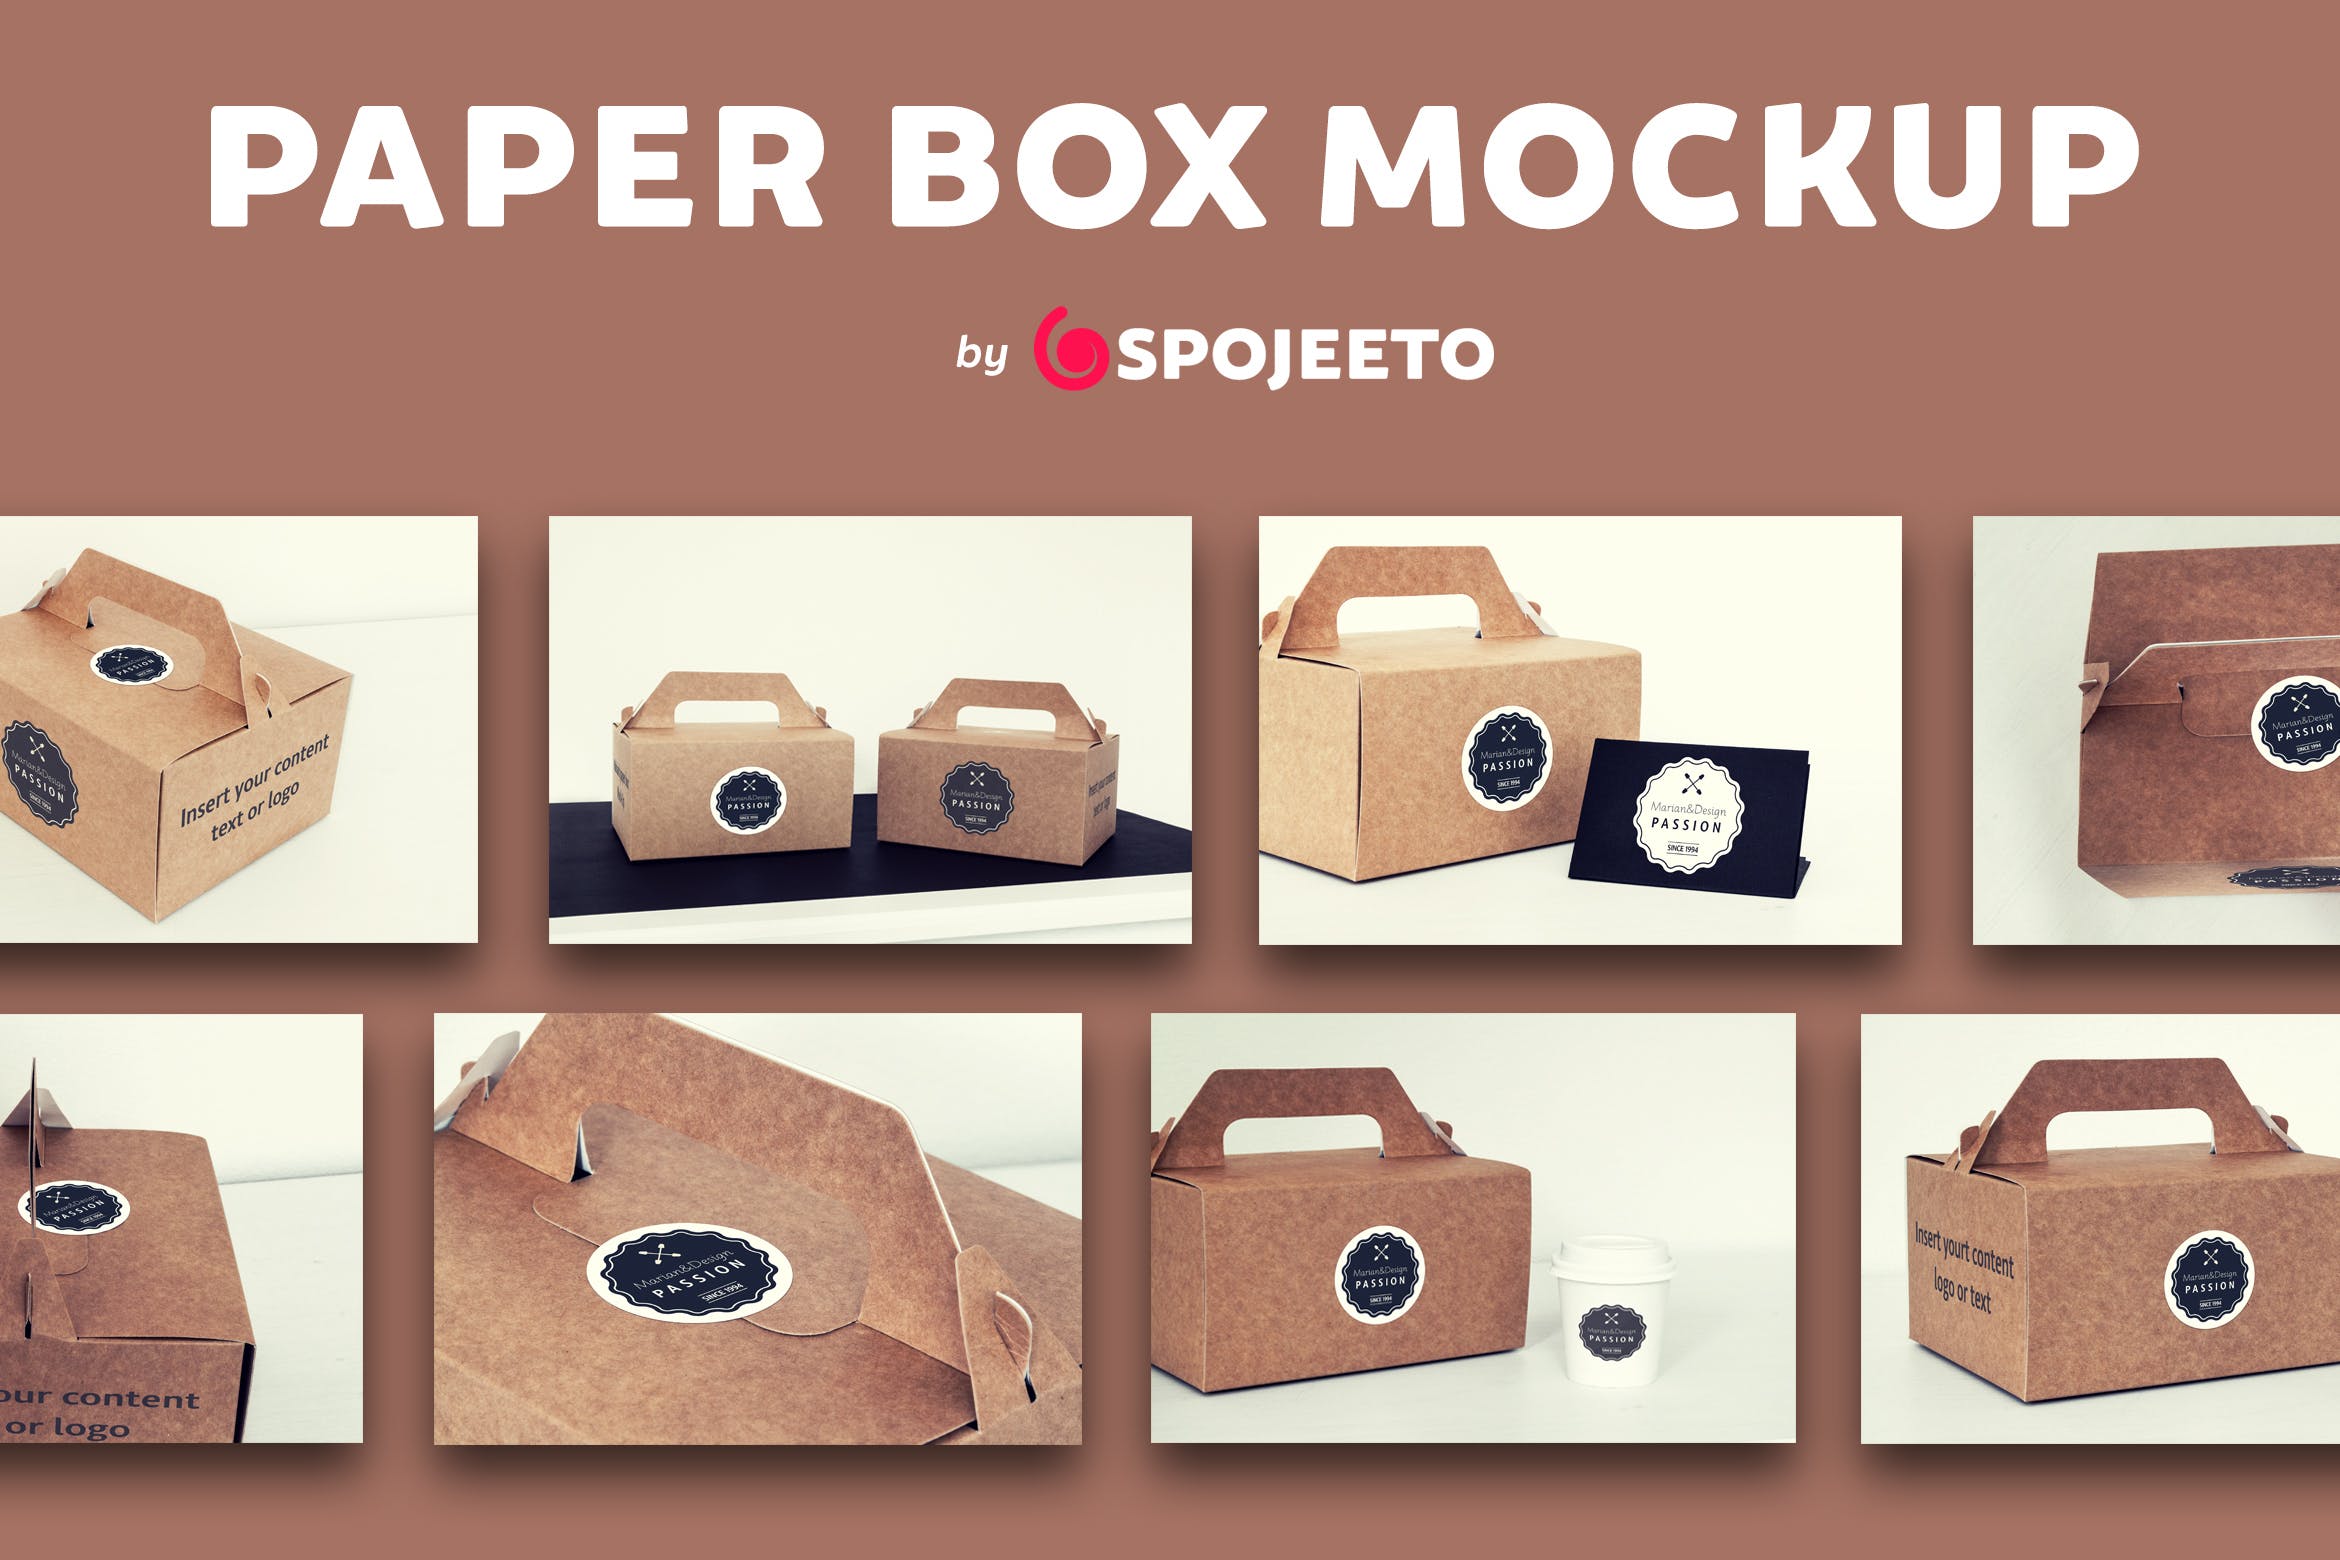 蛋糕外带盒包装&品牌Logo设计效果图素材库精选模板 Photorealistic Paper Box & Logo Mock-Up插图